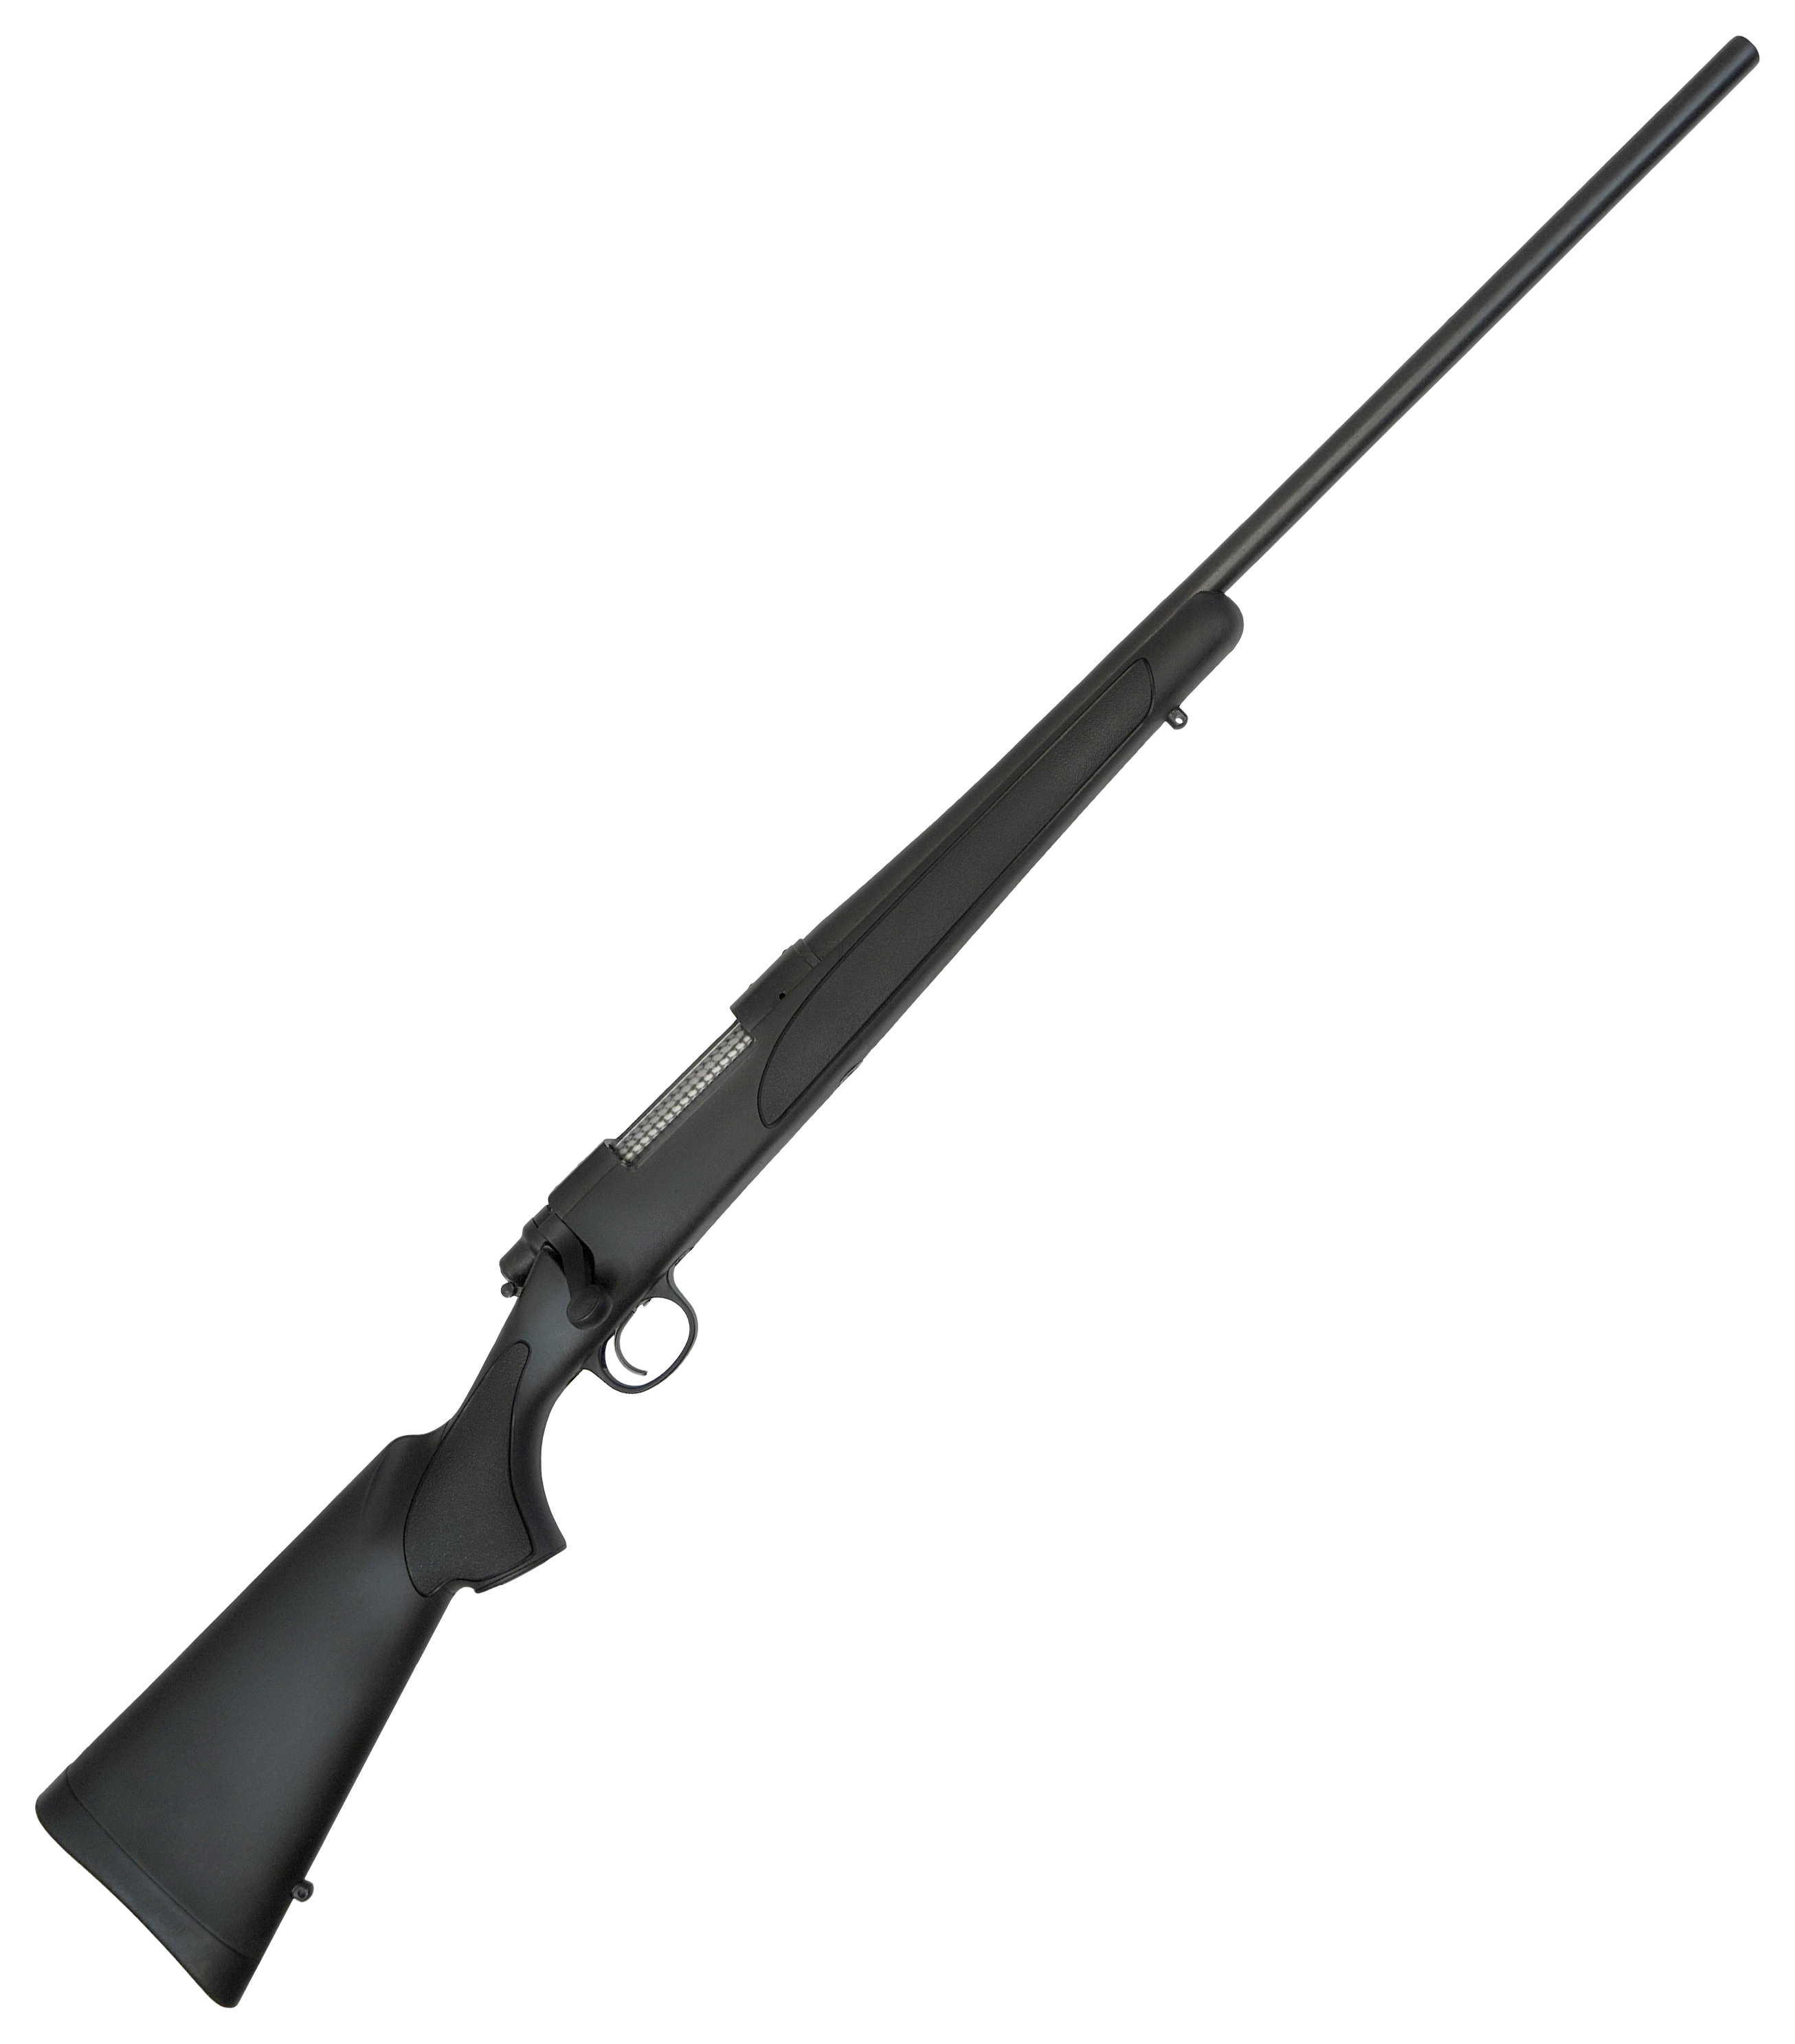 Rifle de caza Remington 783 .308 Win